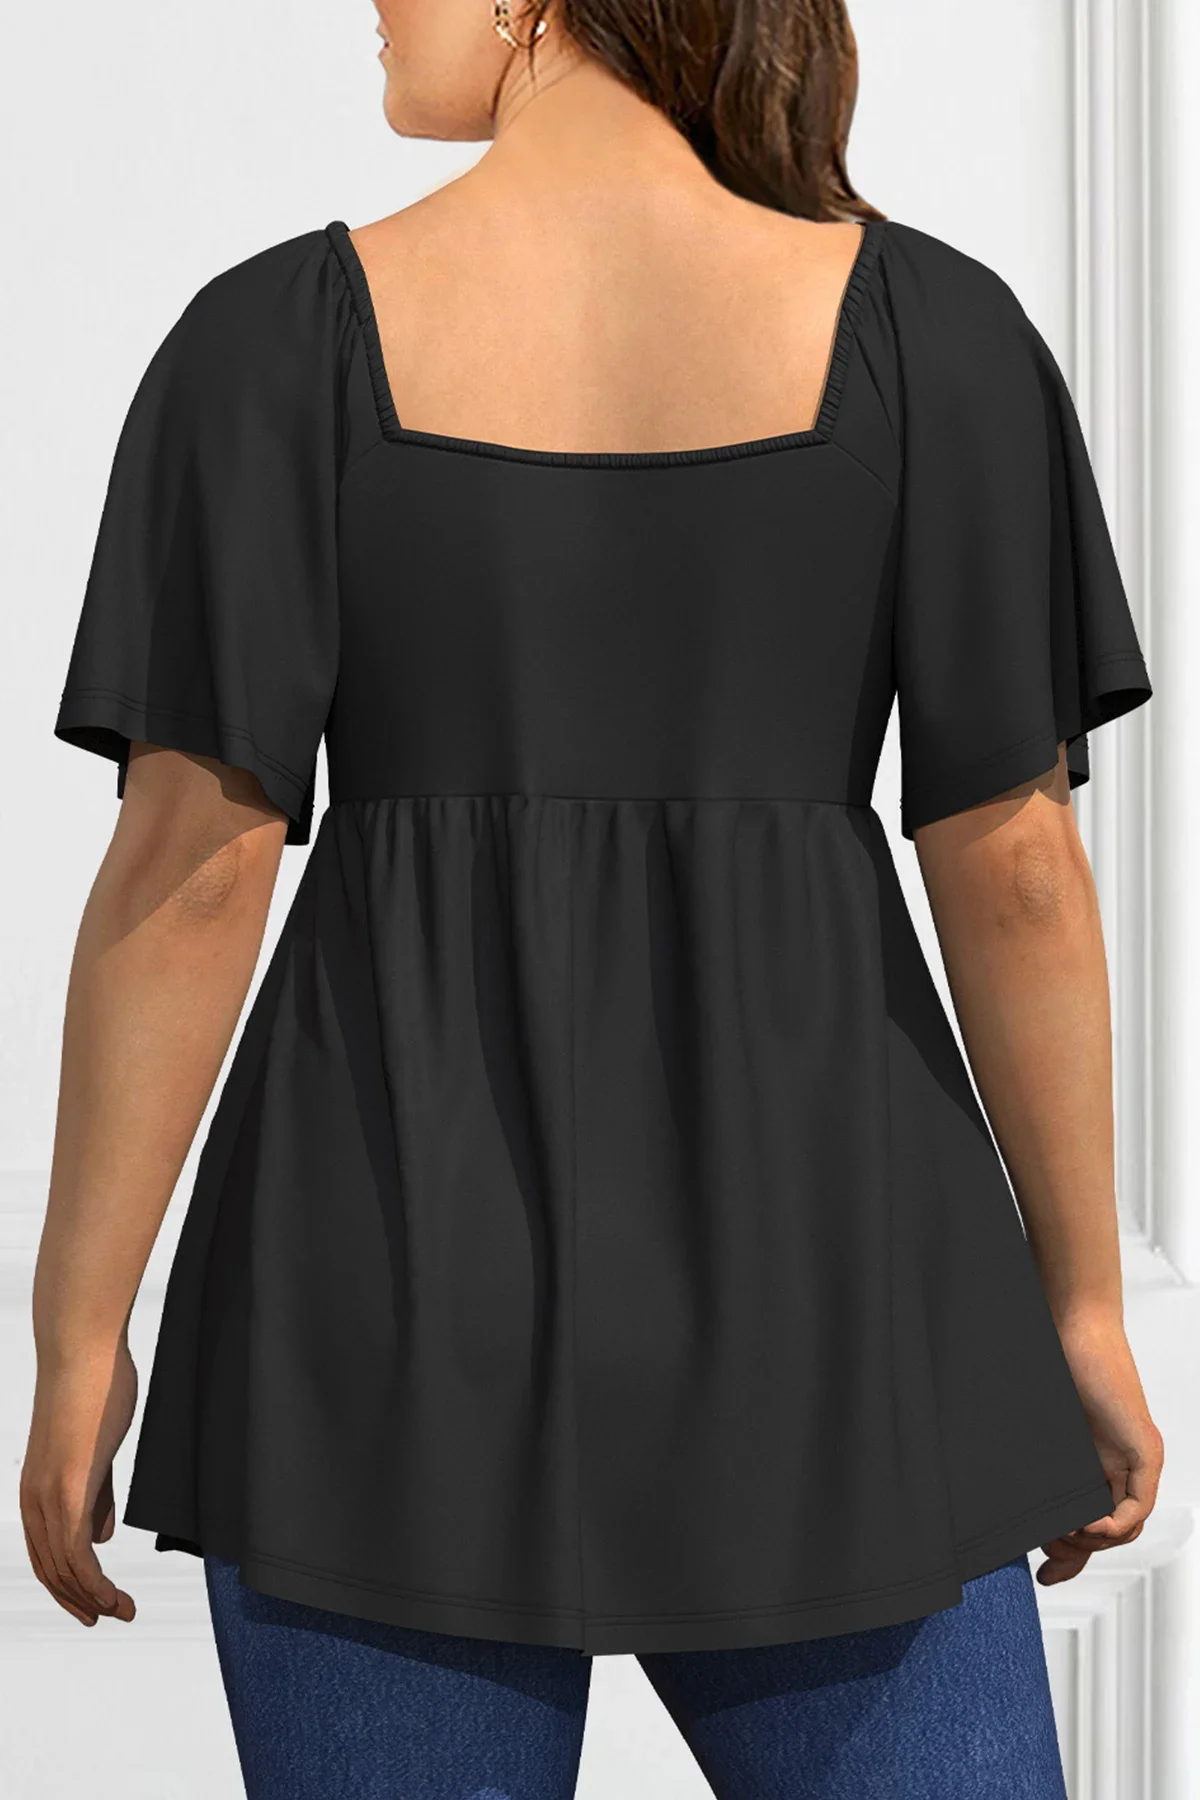 Plus Size Mode eine Linie Frauen Bluse lässig plissiert dekorative Kordel zug quadratischen Kragen T-Shirt elegante Sommer Kurzarm Top